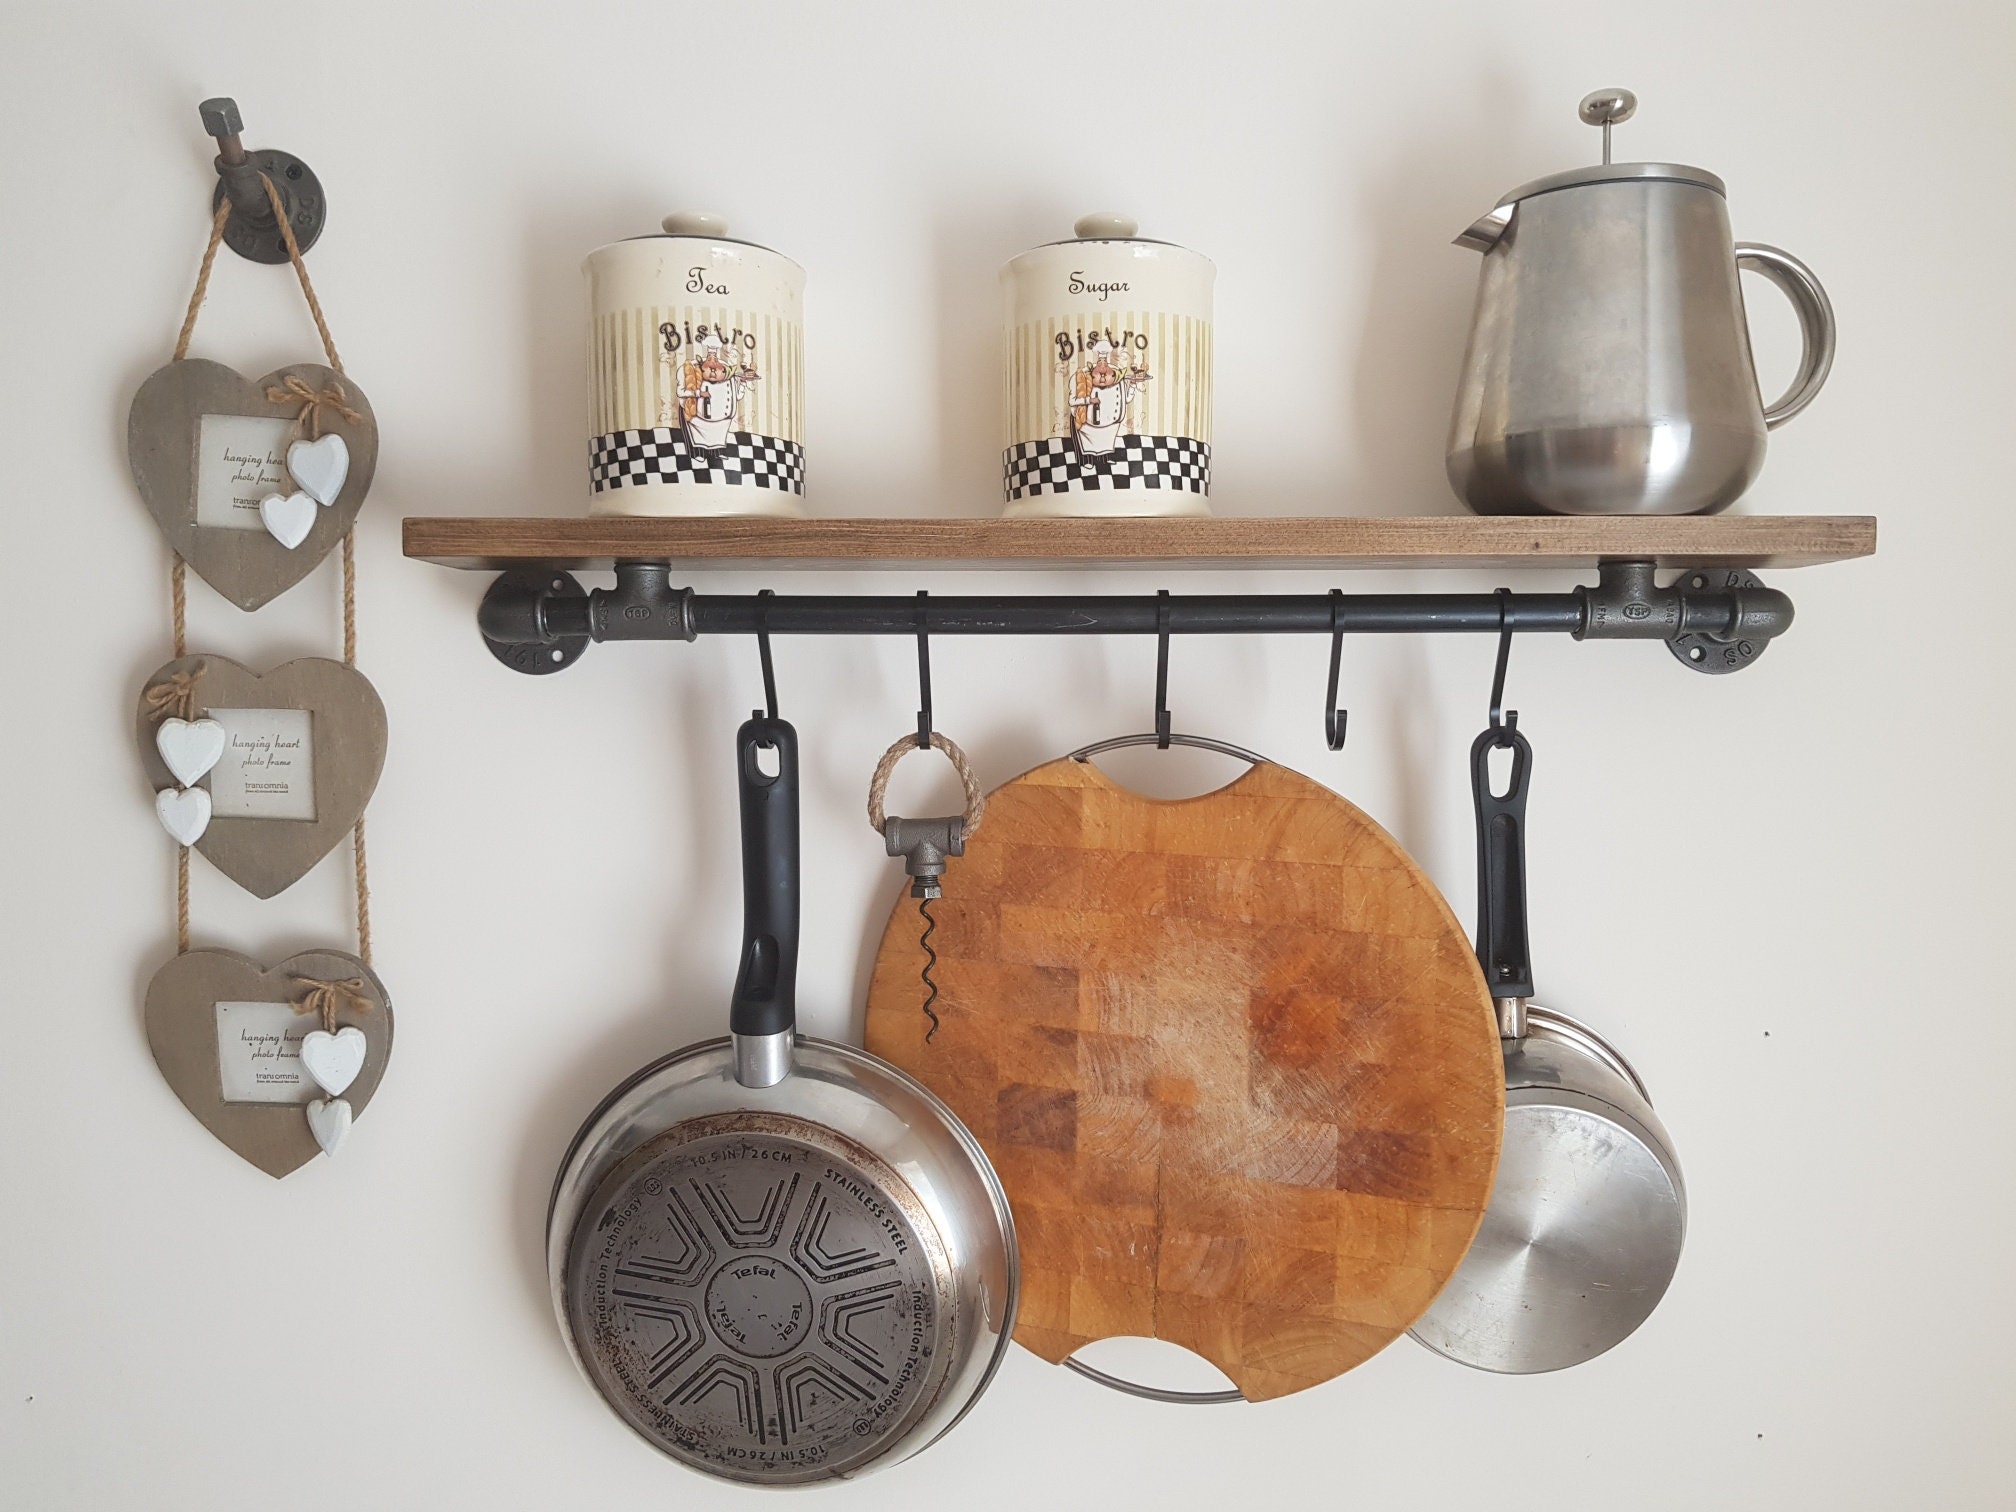 Hanging Pot Pan Holder Hanger Kitchen Rack Cookware Organizer Storage Shelf  Iron